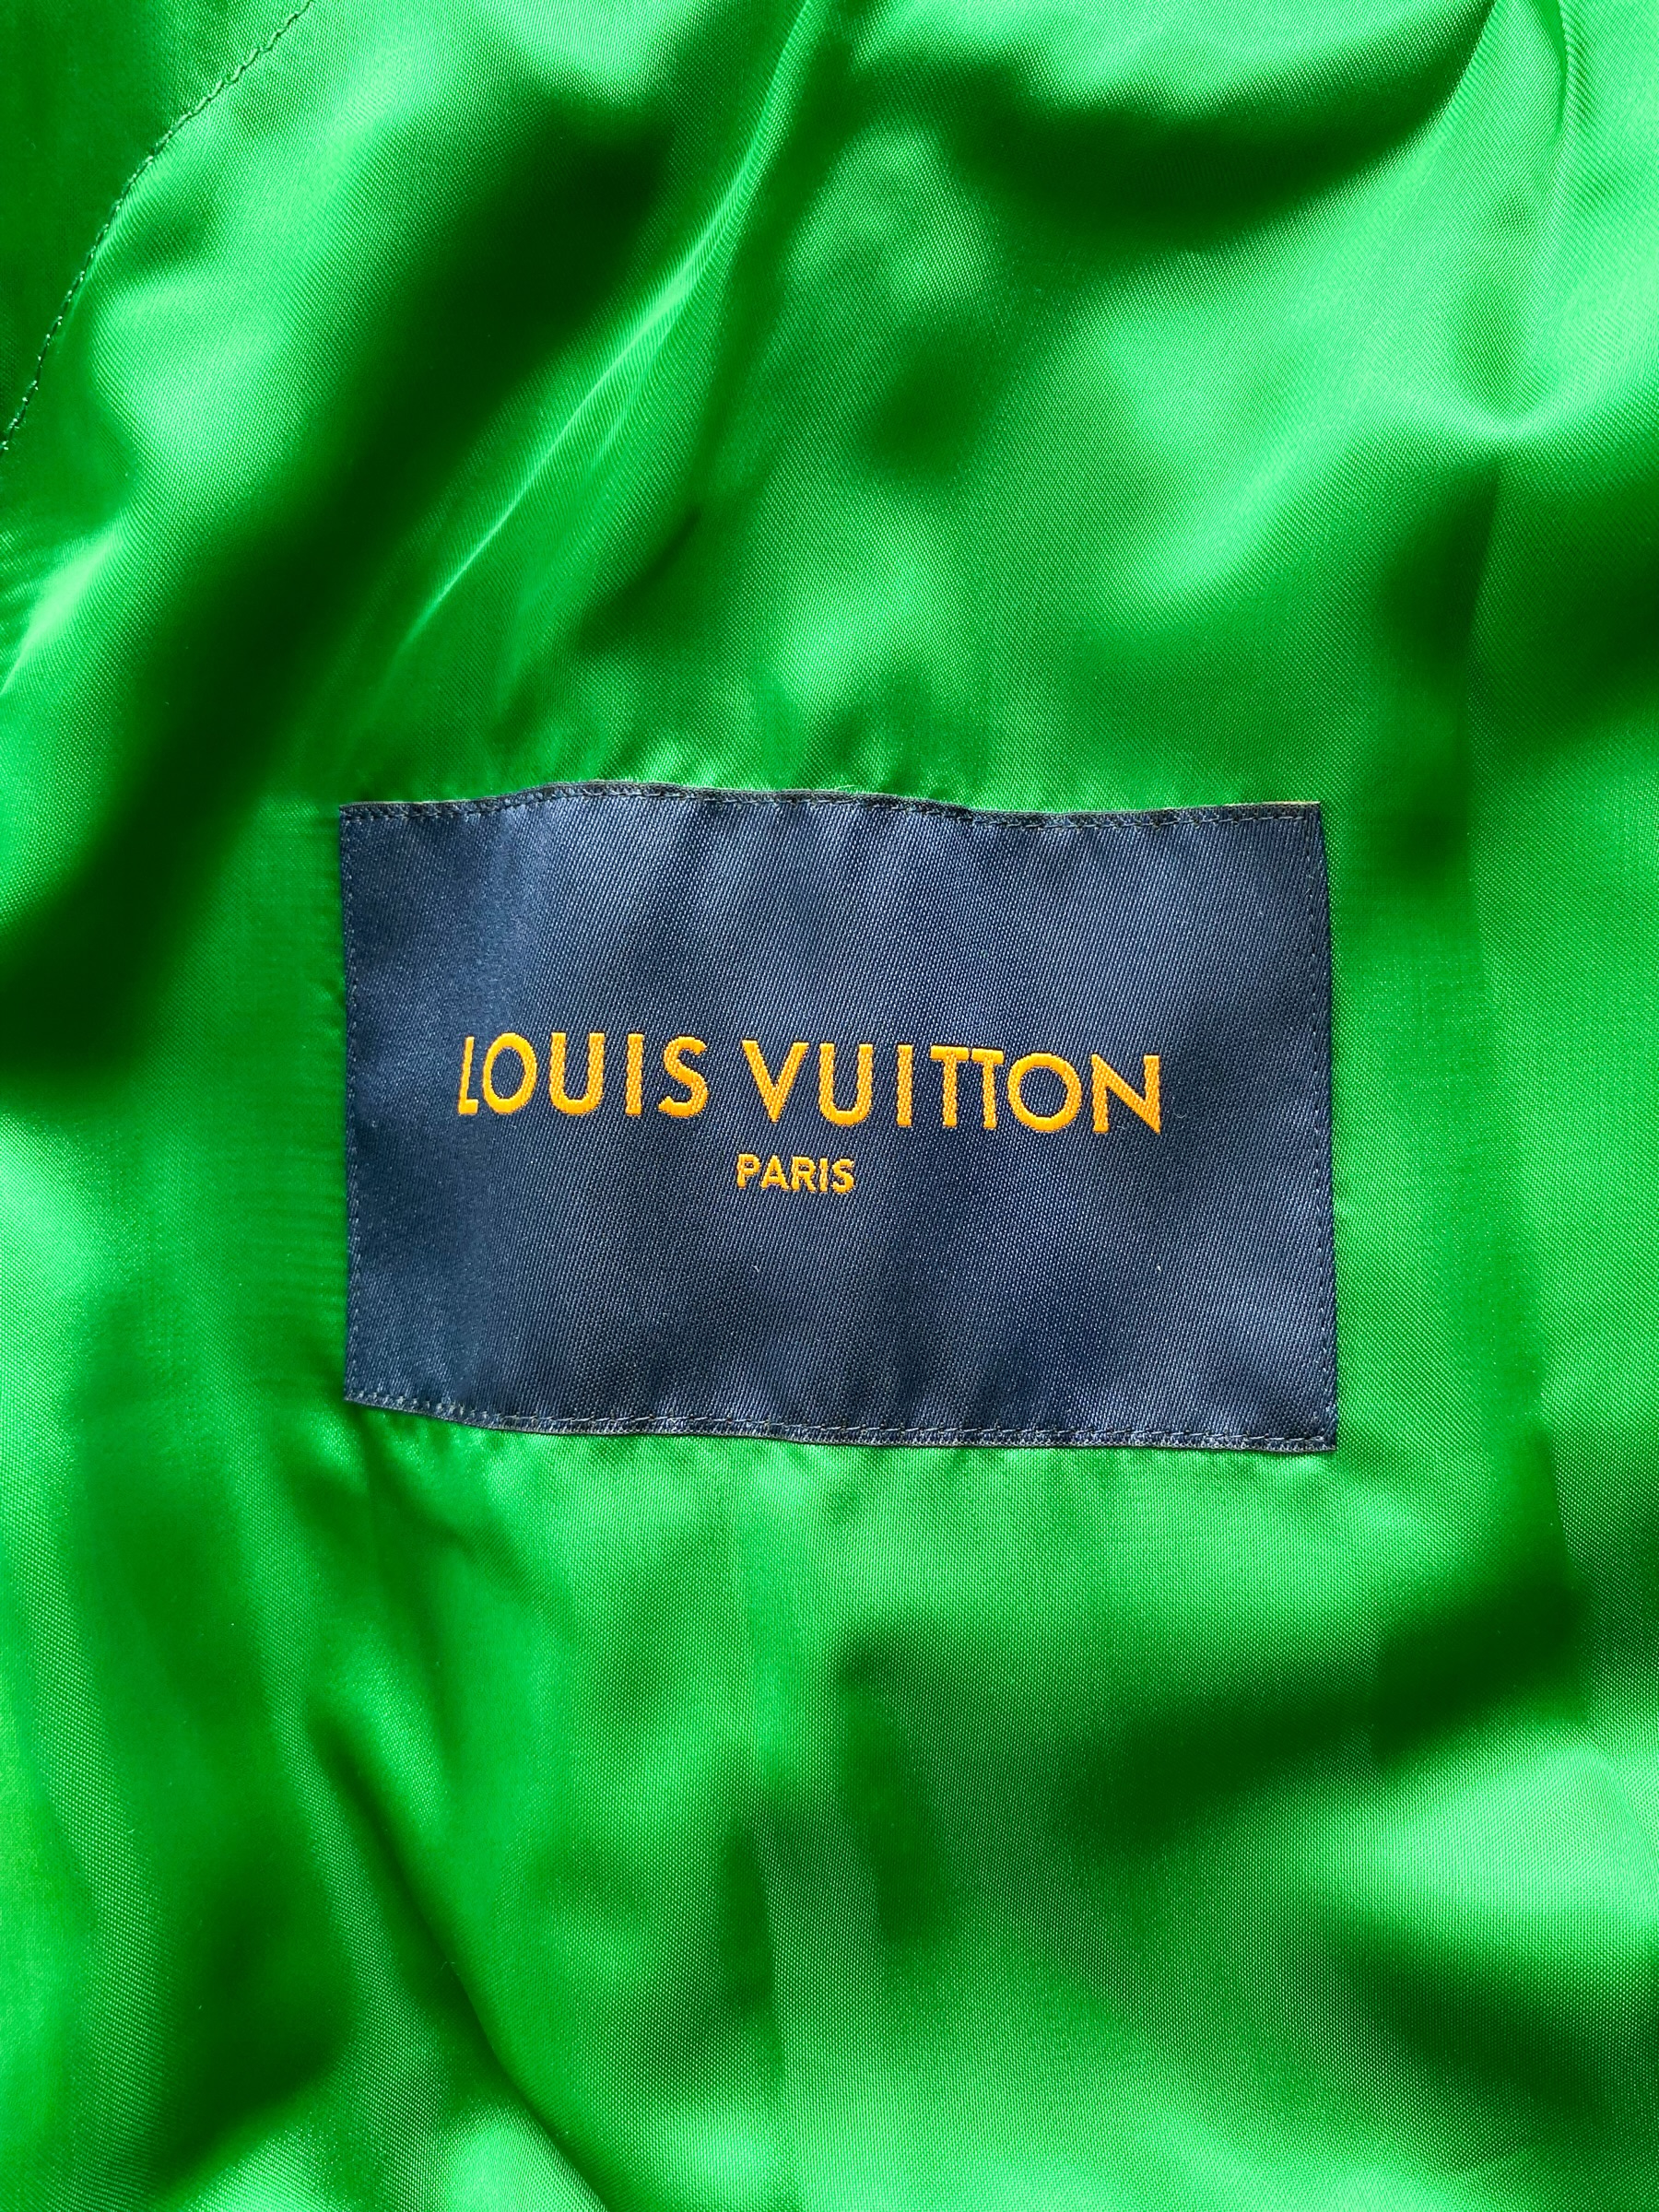 Louis Vuitton Green & White Varsity Leather Jacket